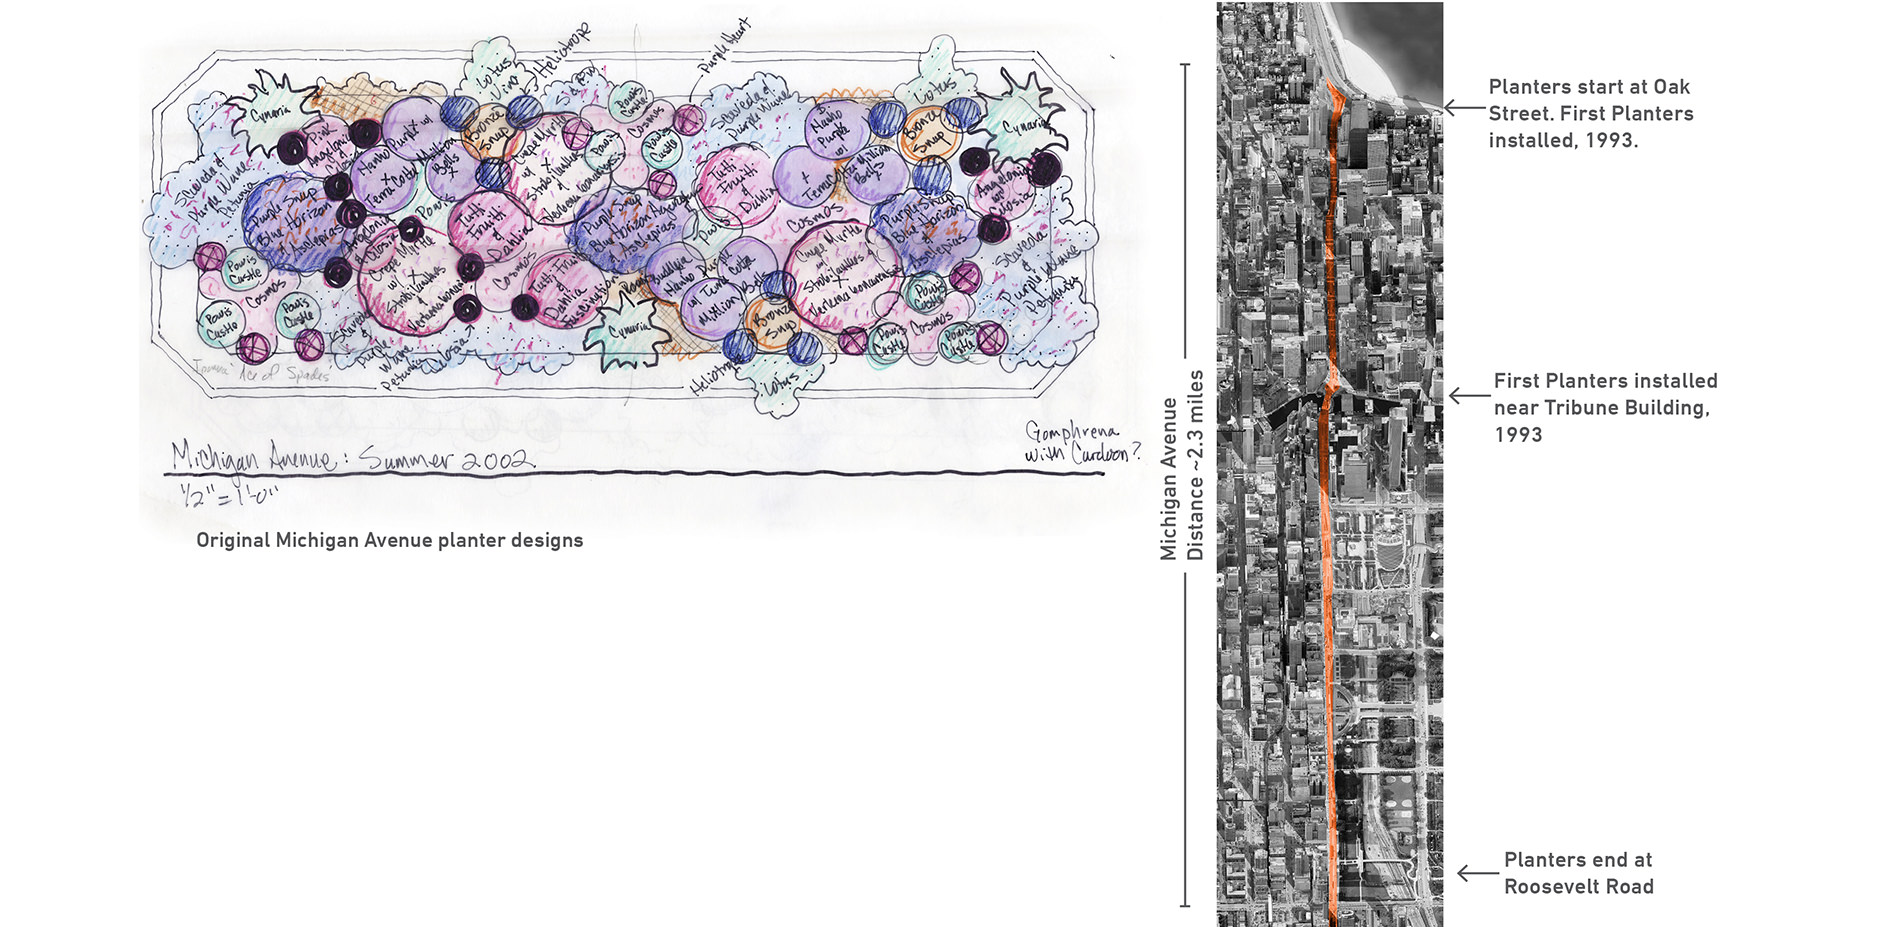 Michigan Avenue Planter Design and Map